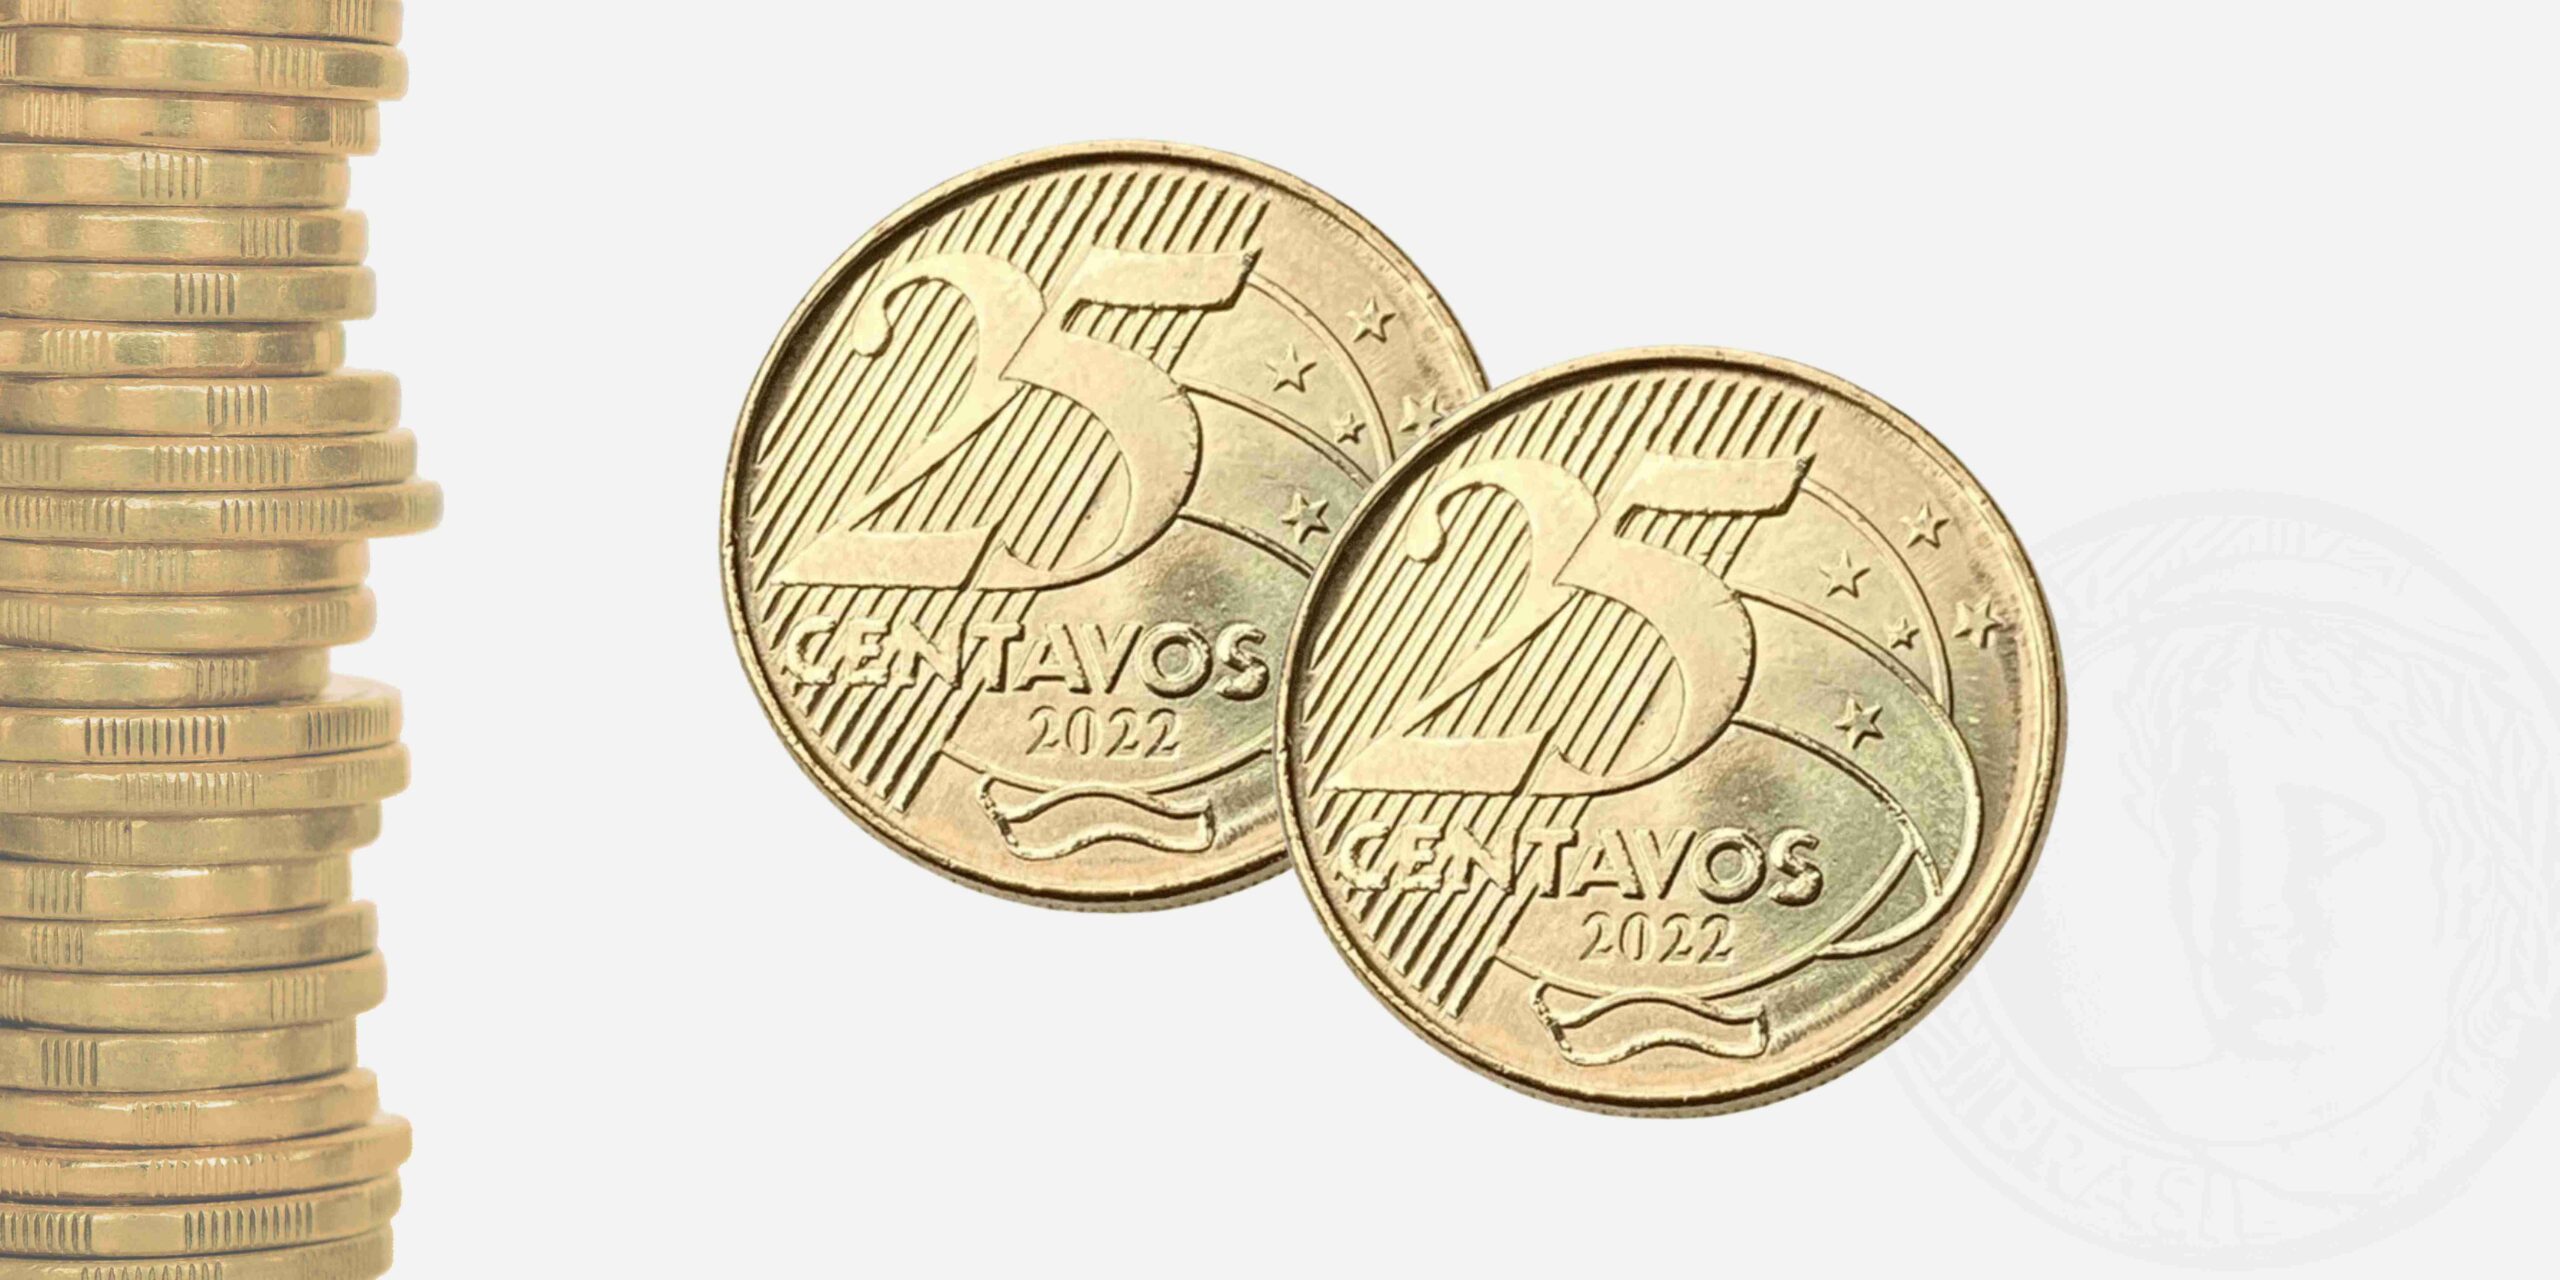 Conheça a moeda de 25 centavos que está valendo MUITO!